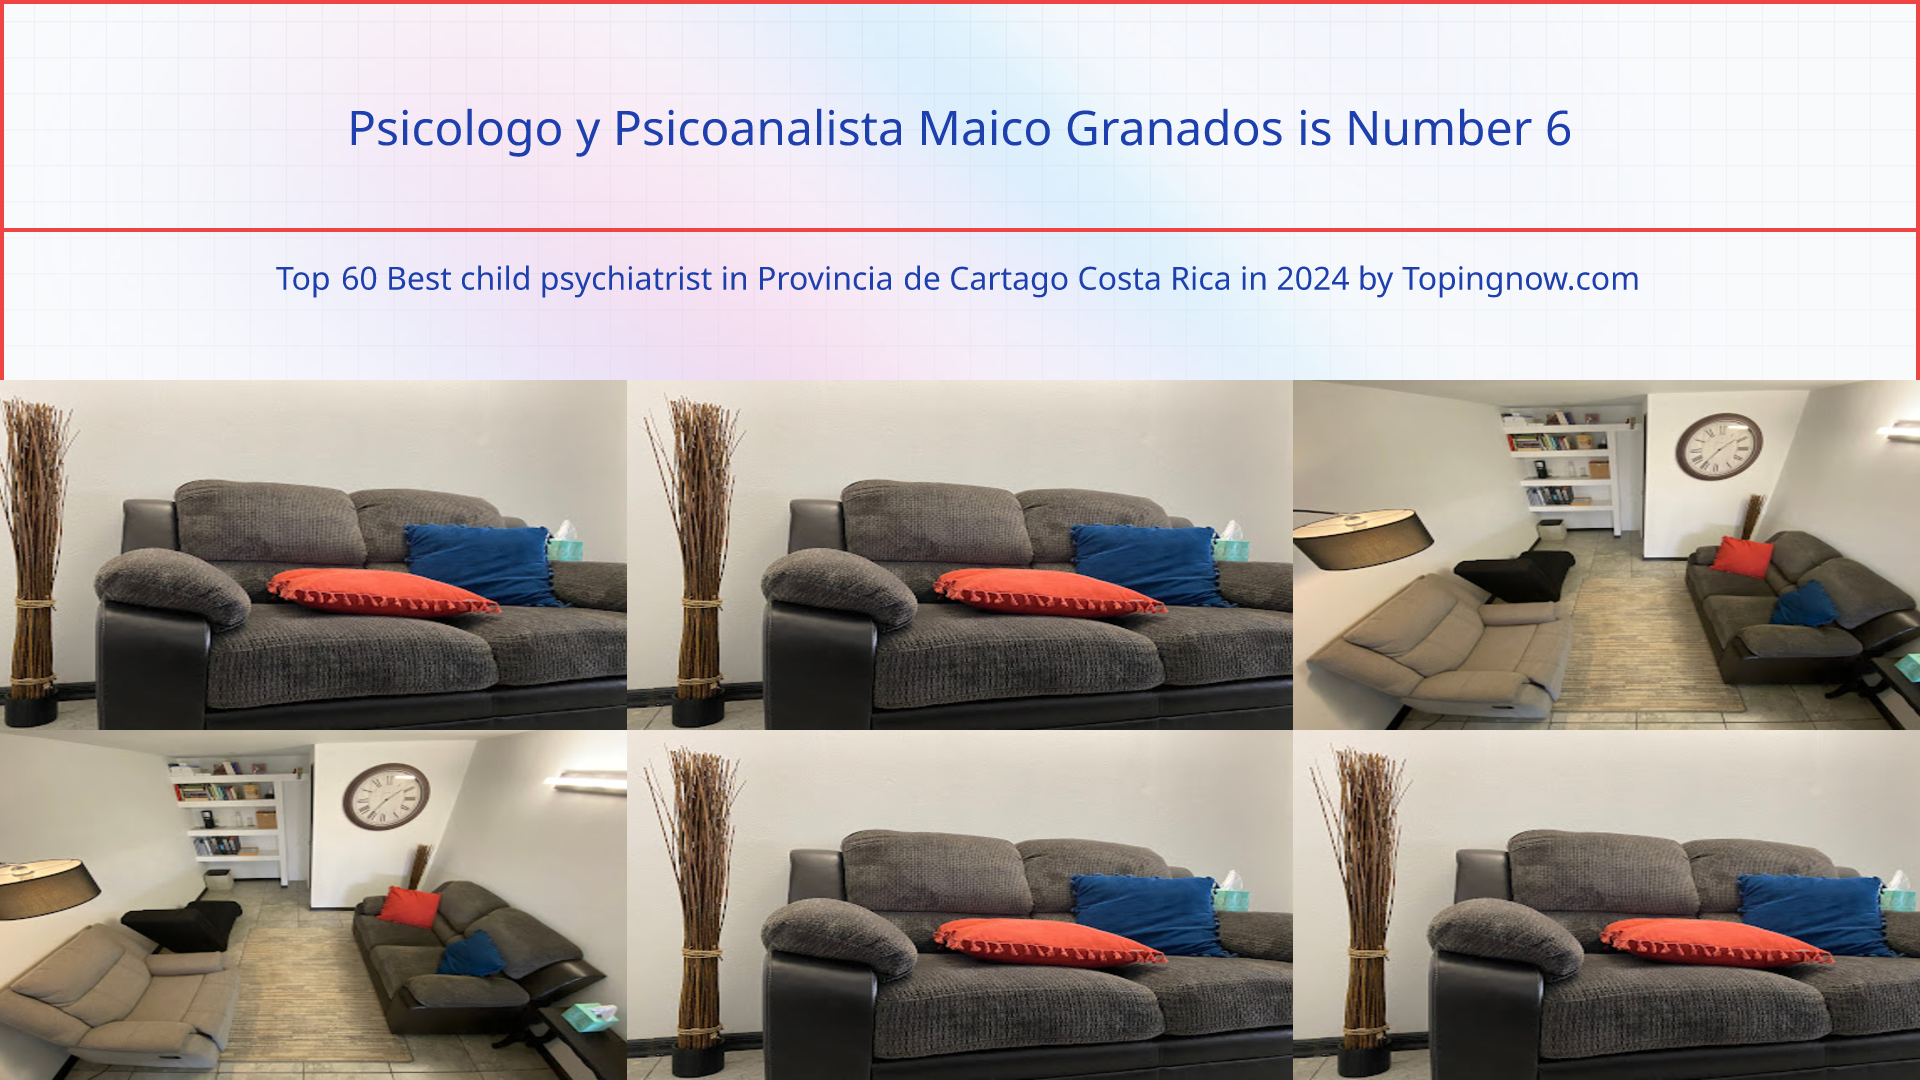 Psicologo y Psicoanalista Maico Granados: Top 60 Best child psychiatrist in Provincia de Cartago Costa Rica in 2024